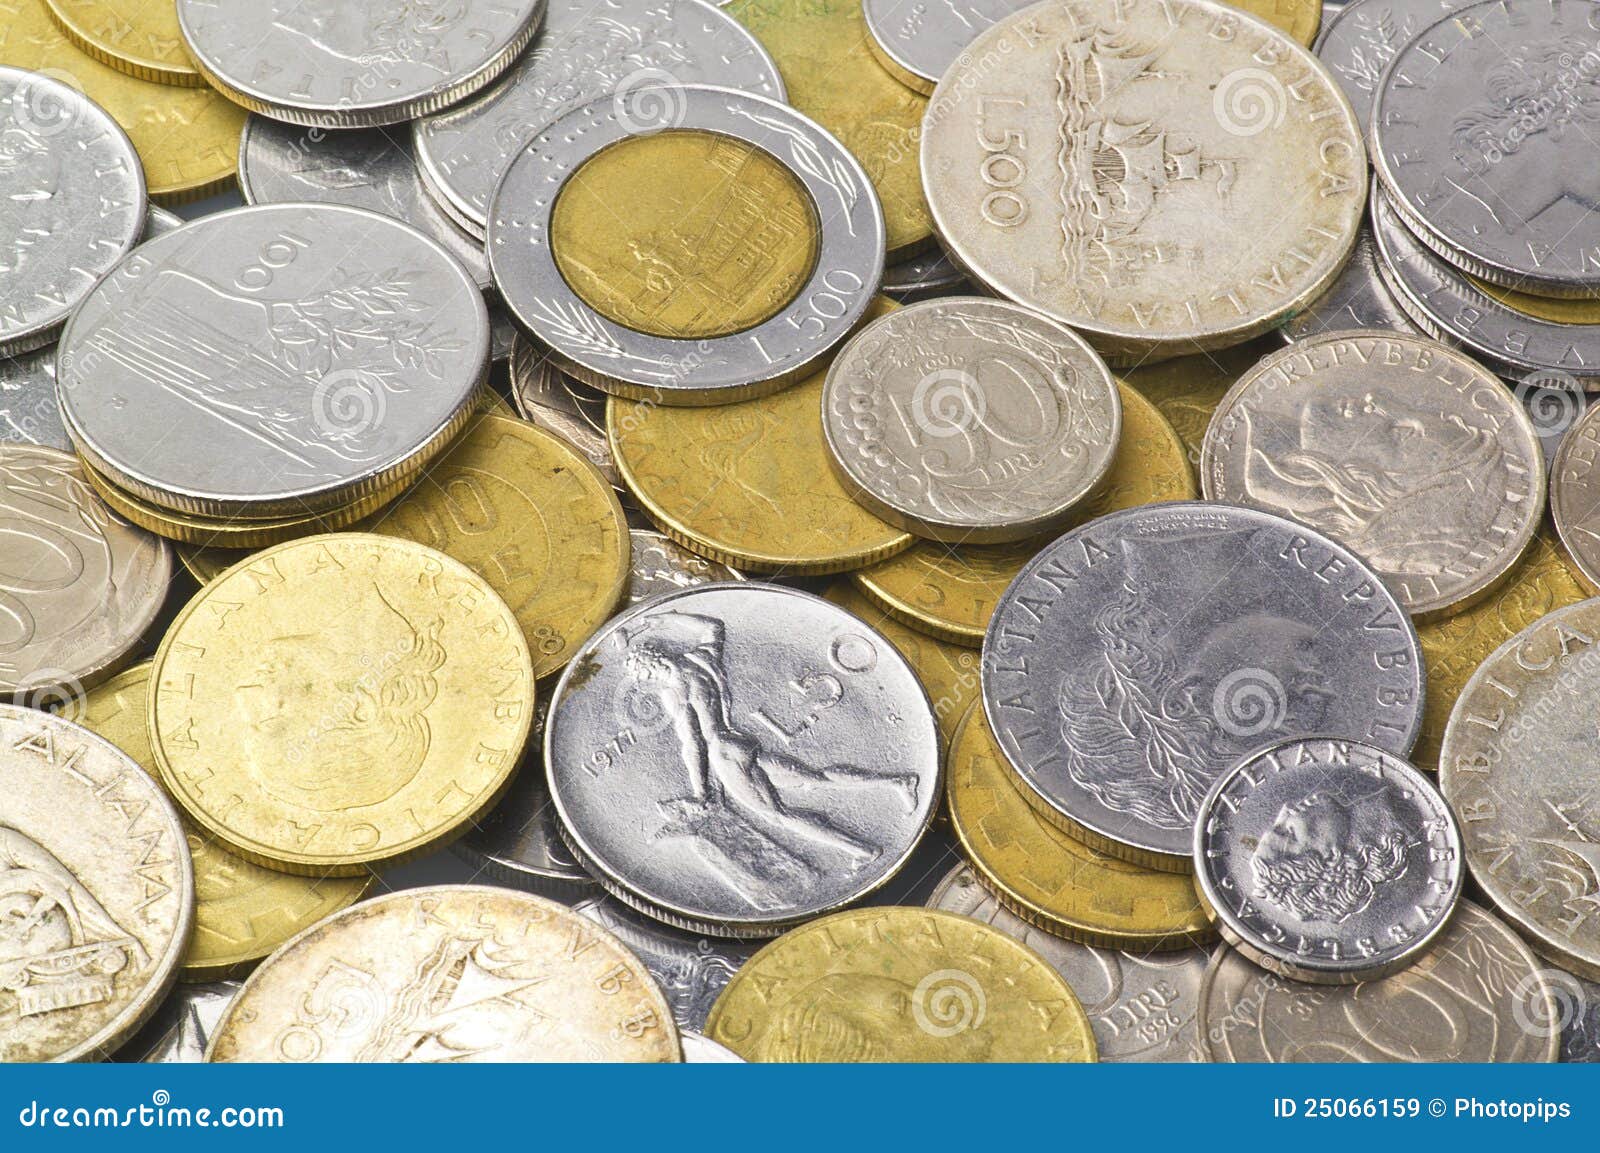 Купить много монет. Итальянские монетки. Много монет. Монеты Германии в куче. Куча монеты Австрии.